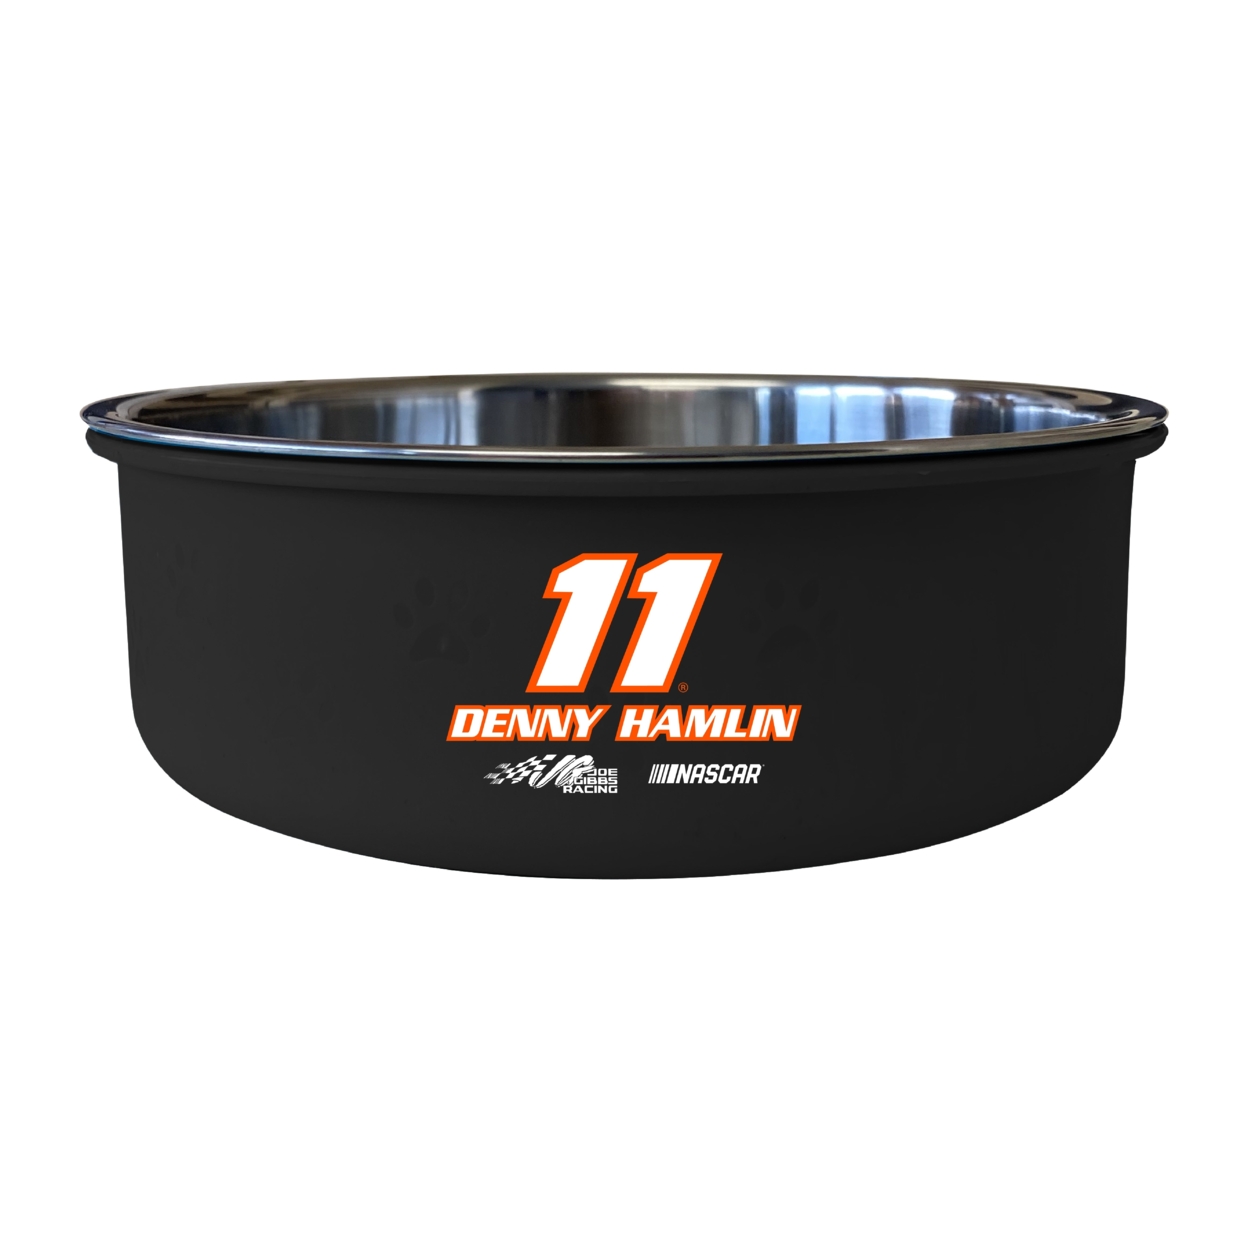 #11 Denny Hamlin Officially Licensed 5x2.25 Pet Bowl